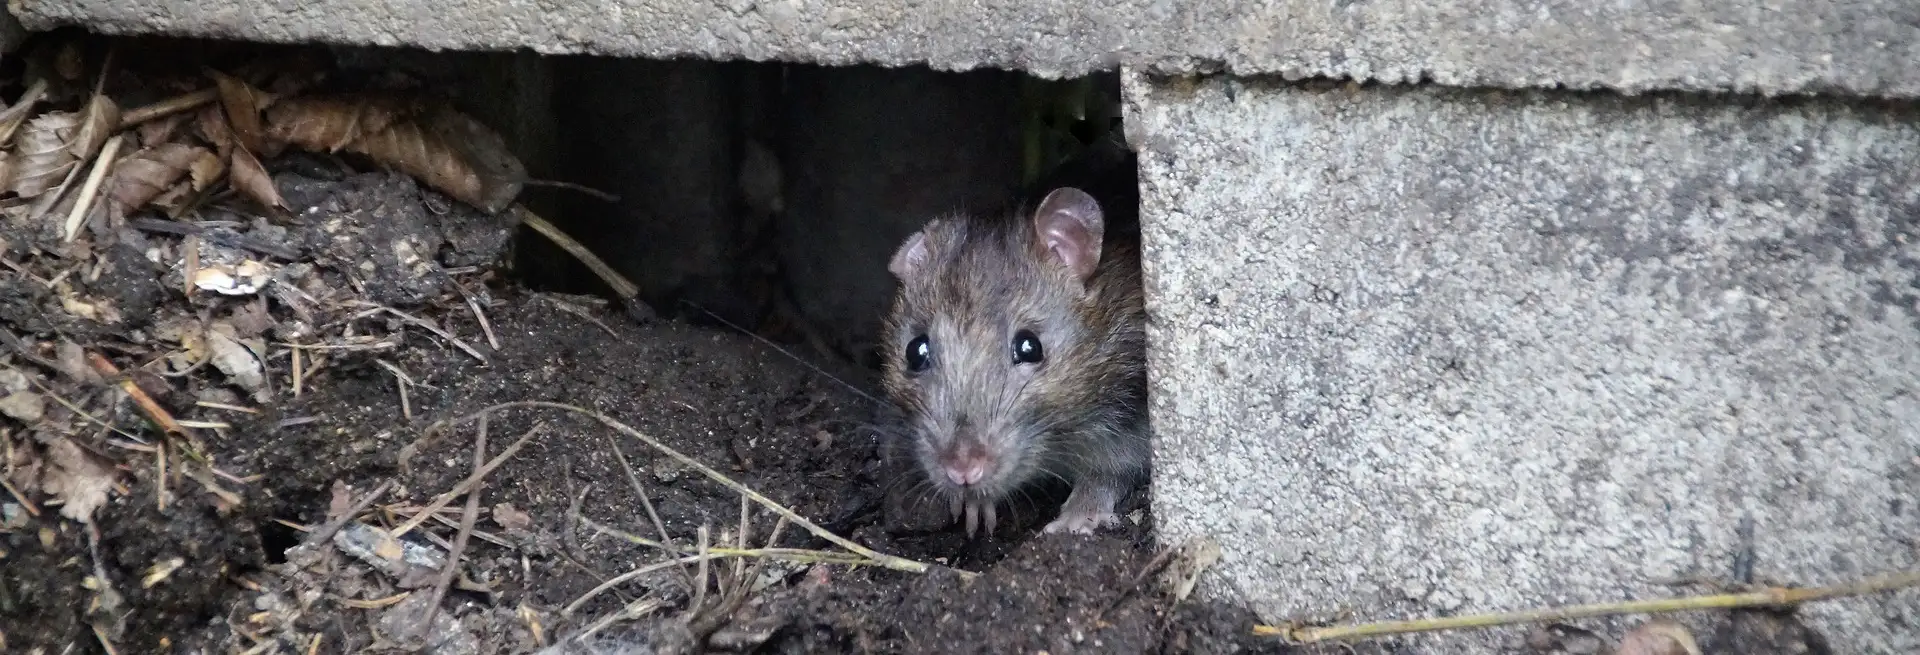 Ratten und Mäuse - Gefahr für Mensch und Tier